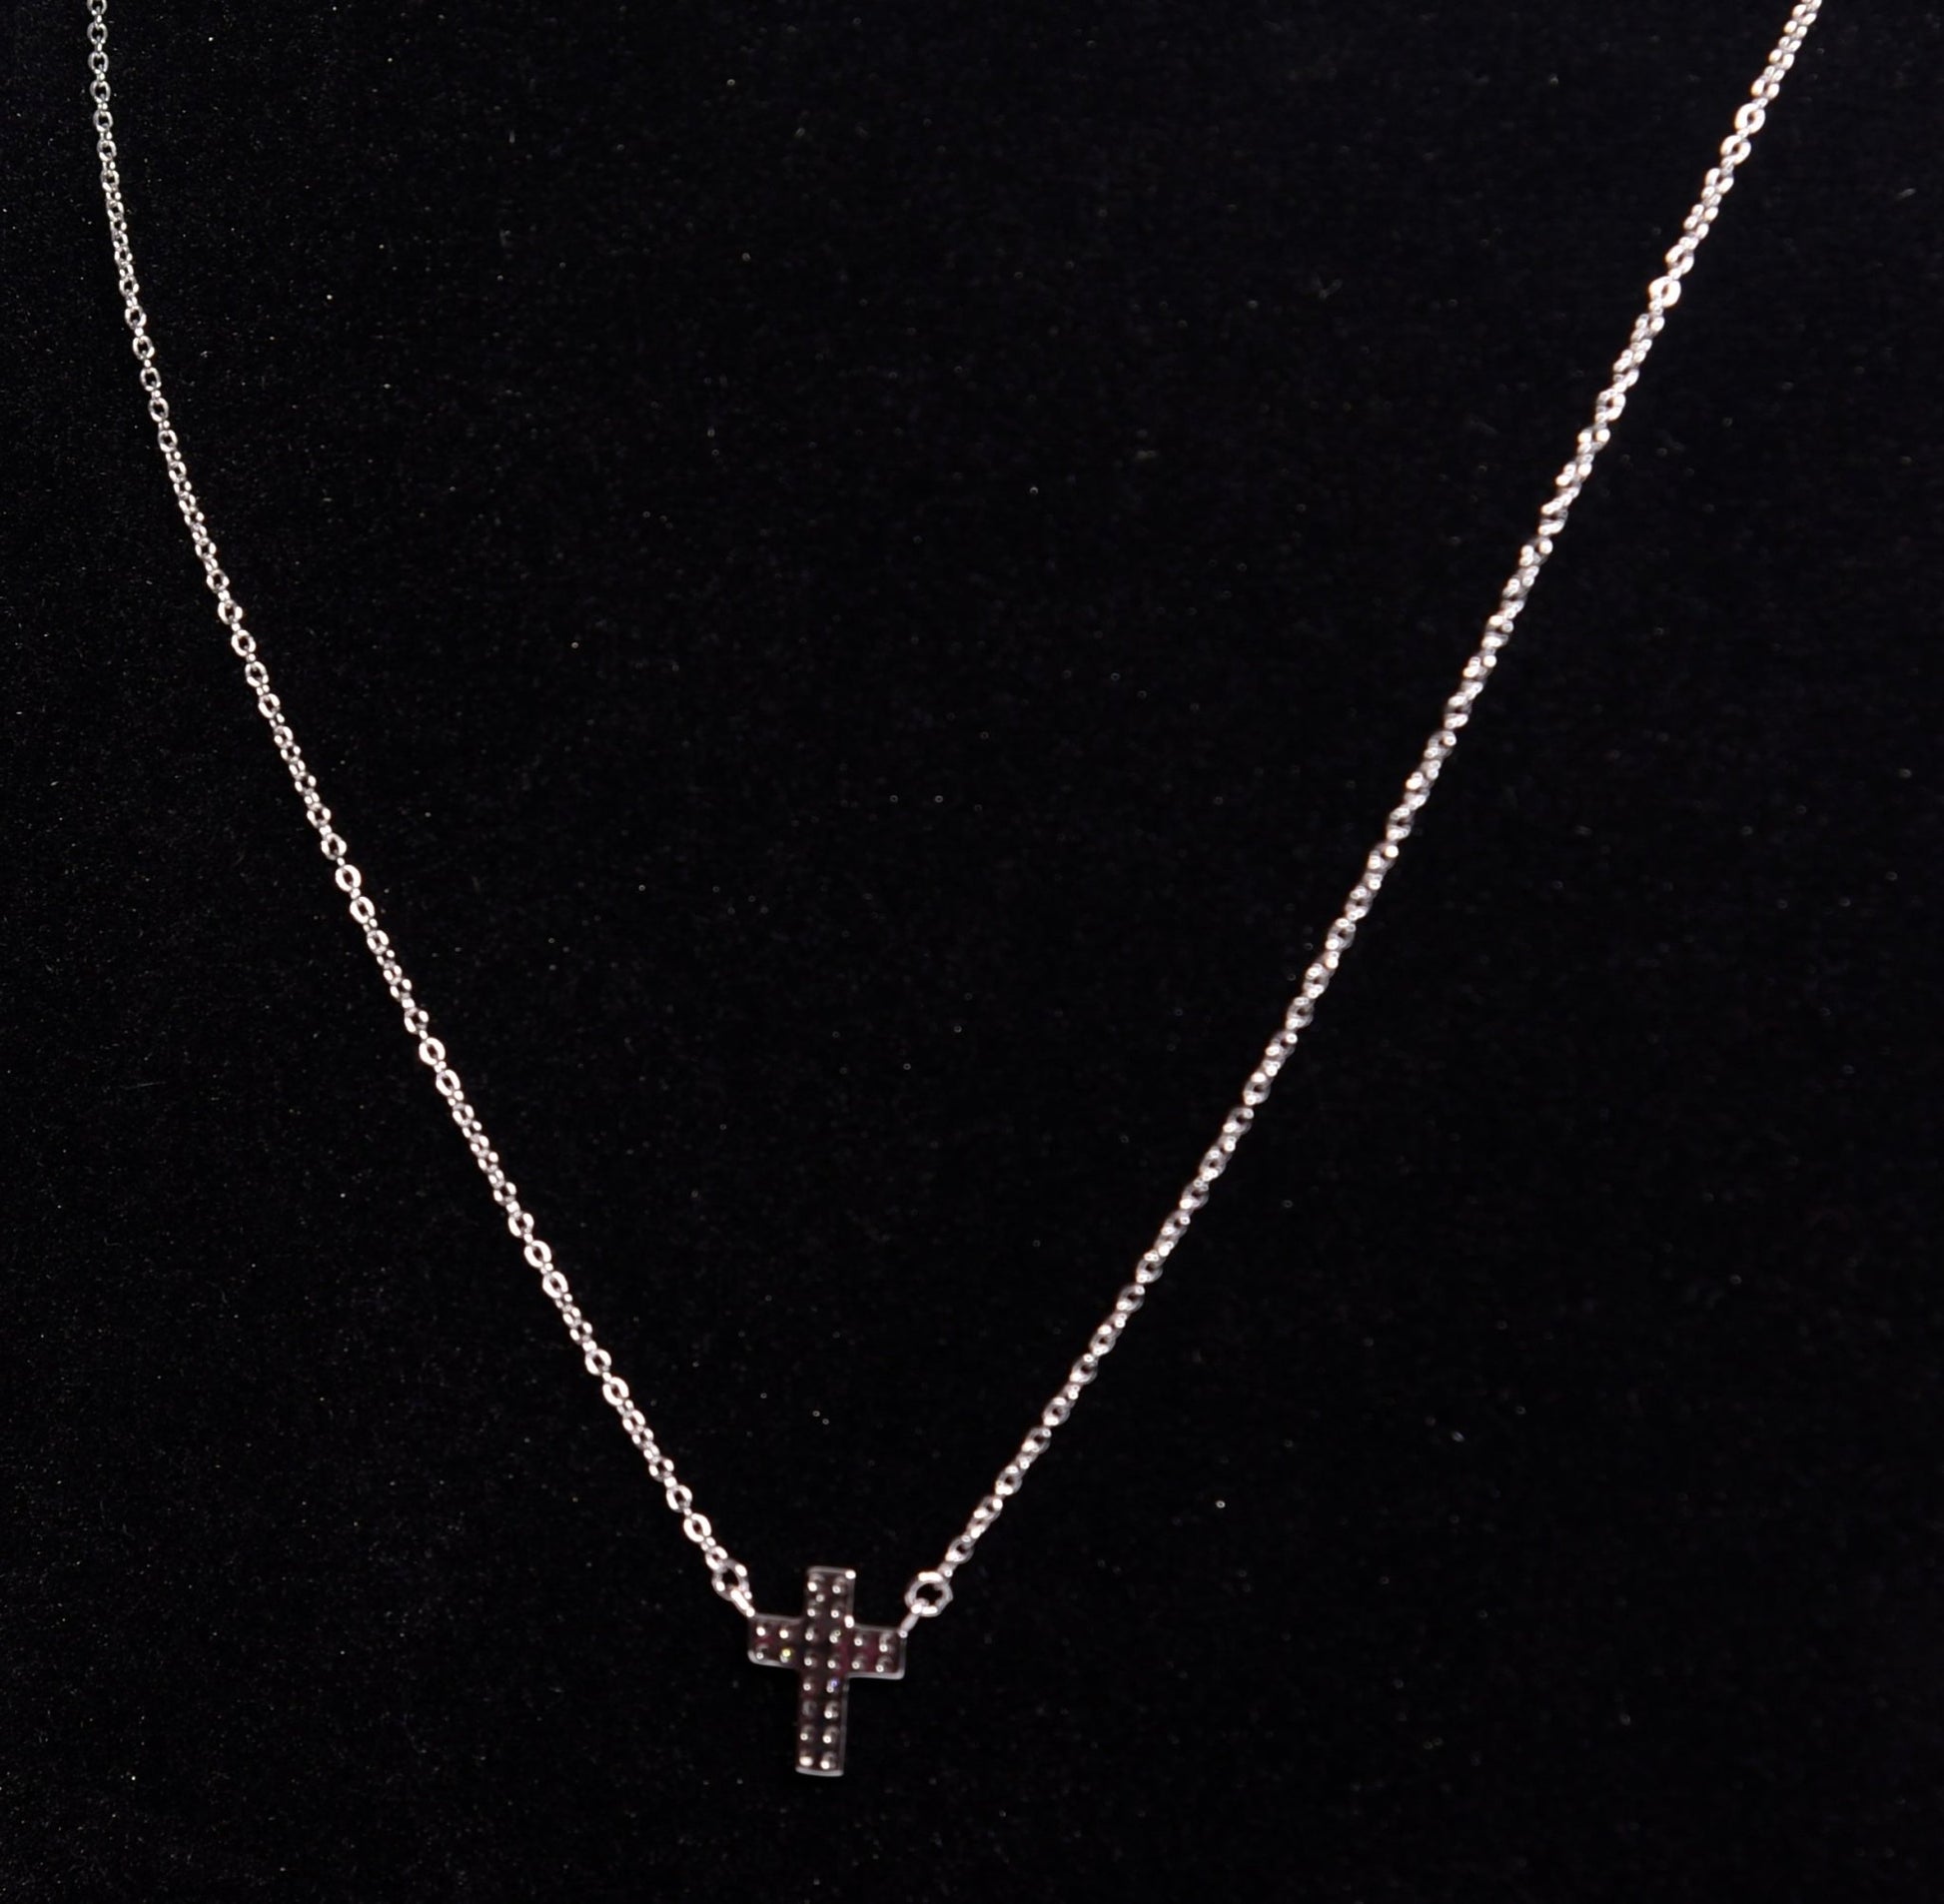 Silver Chain | Cross White Stone Pendant | 925 Premium Silver | Women's Chain - Indique